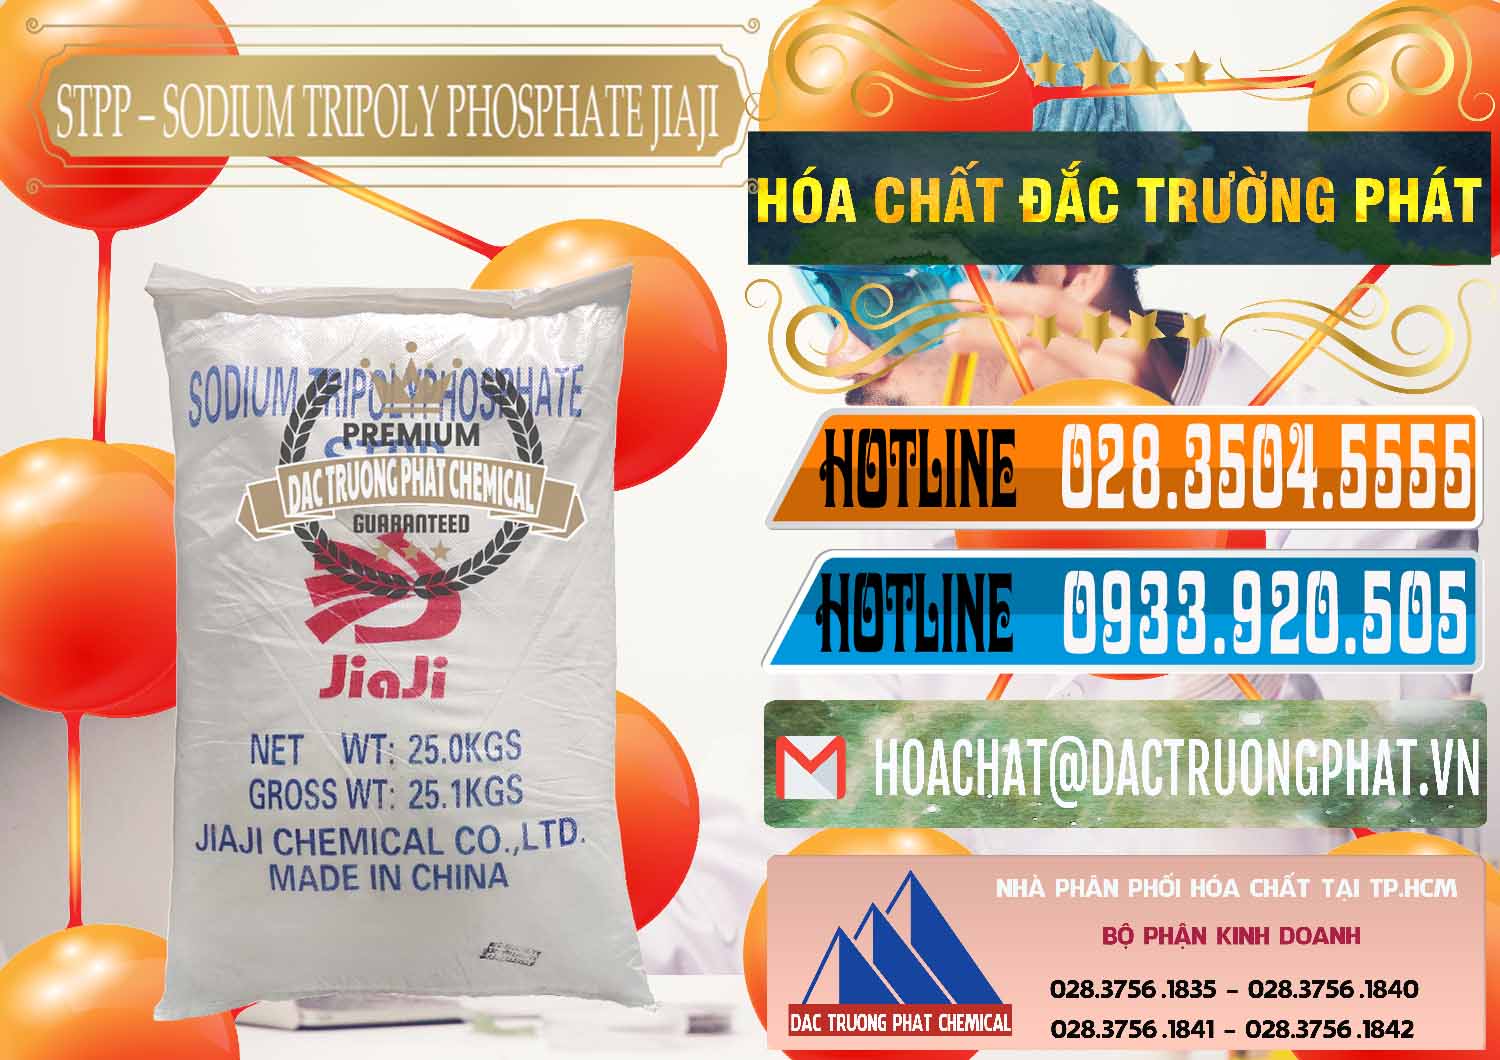 Chuyên bán ( cung cấp ) Sodium Tripoly Phosphate - STPP Jiaji Trung Quốc China - 0154 - Cty cung cấp & bán hóa chất tại TP.HCM - stmp.net